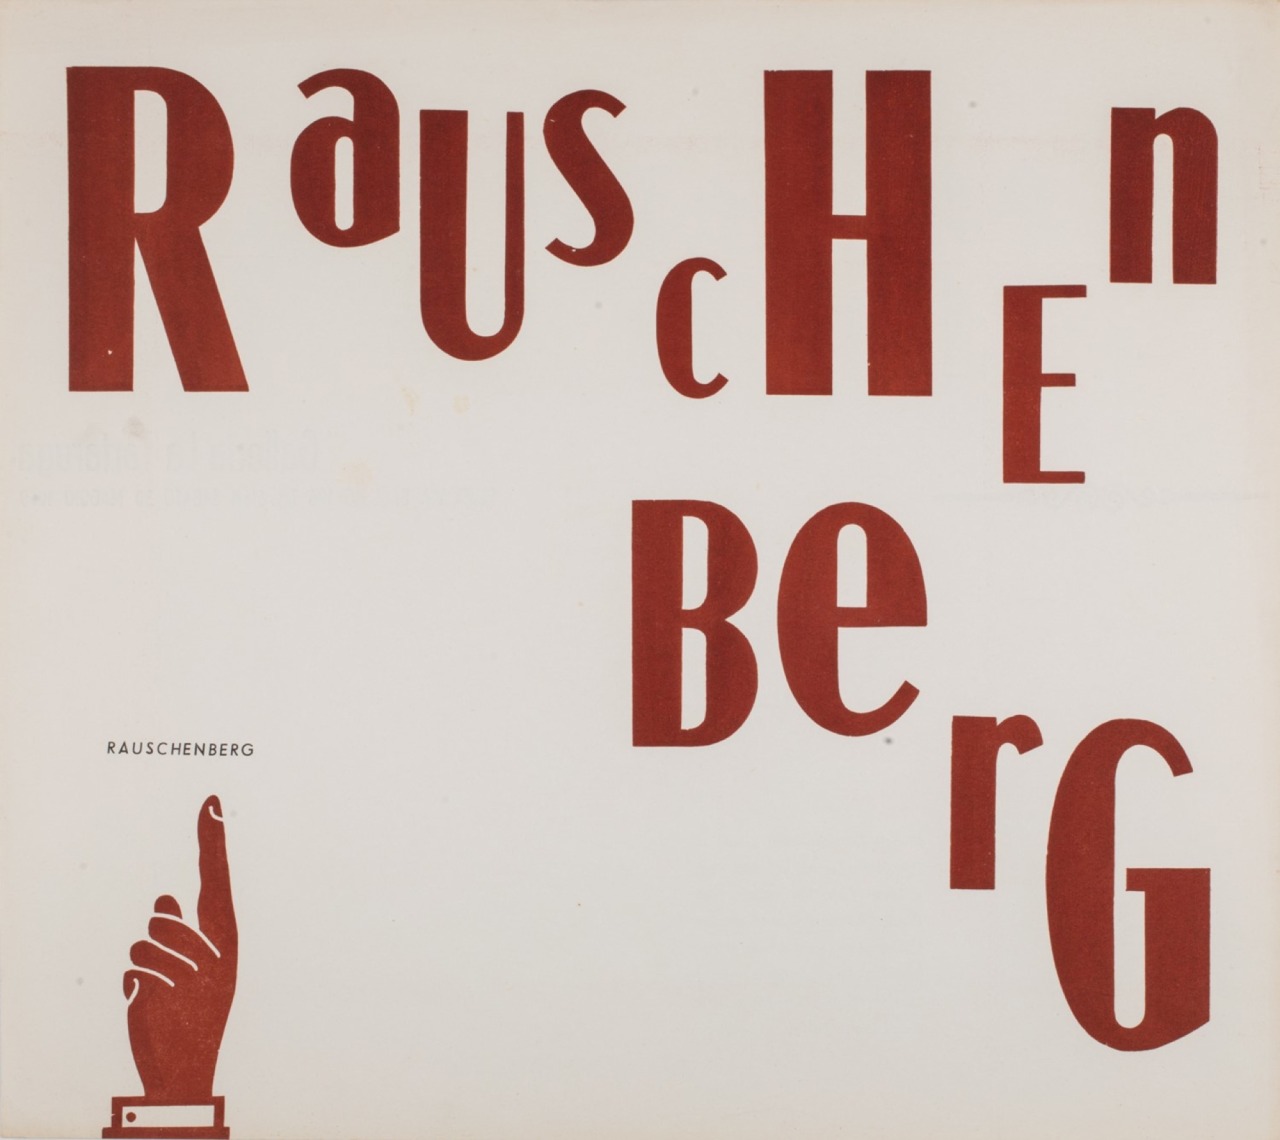 Pieghevole della mostra Rauschenberg, 30 maggio 1959, Roma, Galleria La Tartaruga
